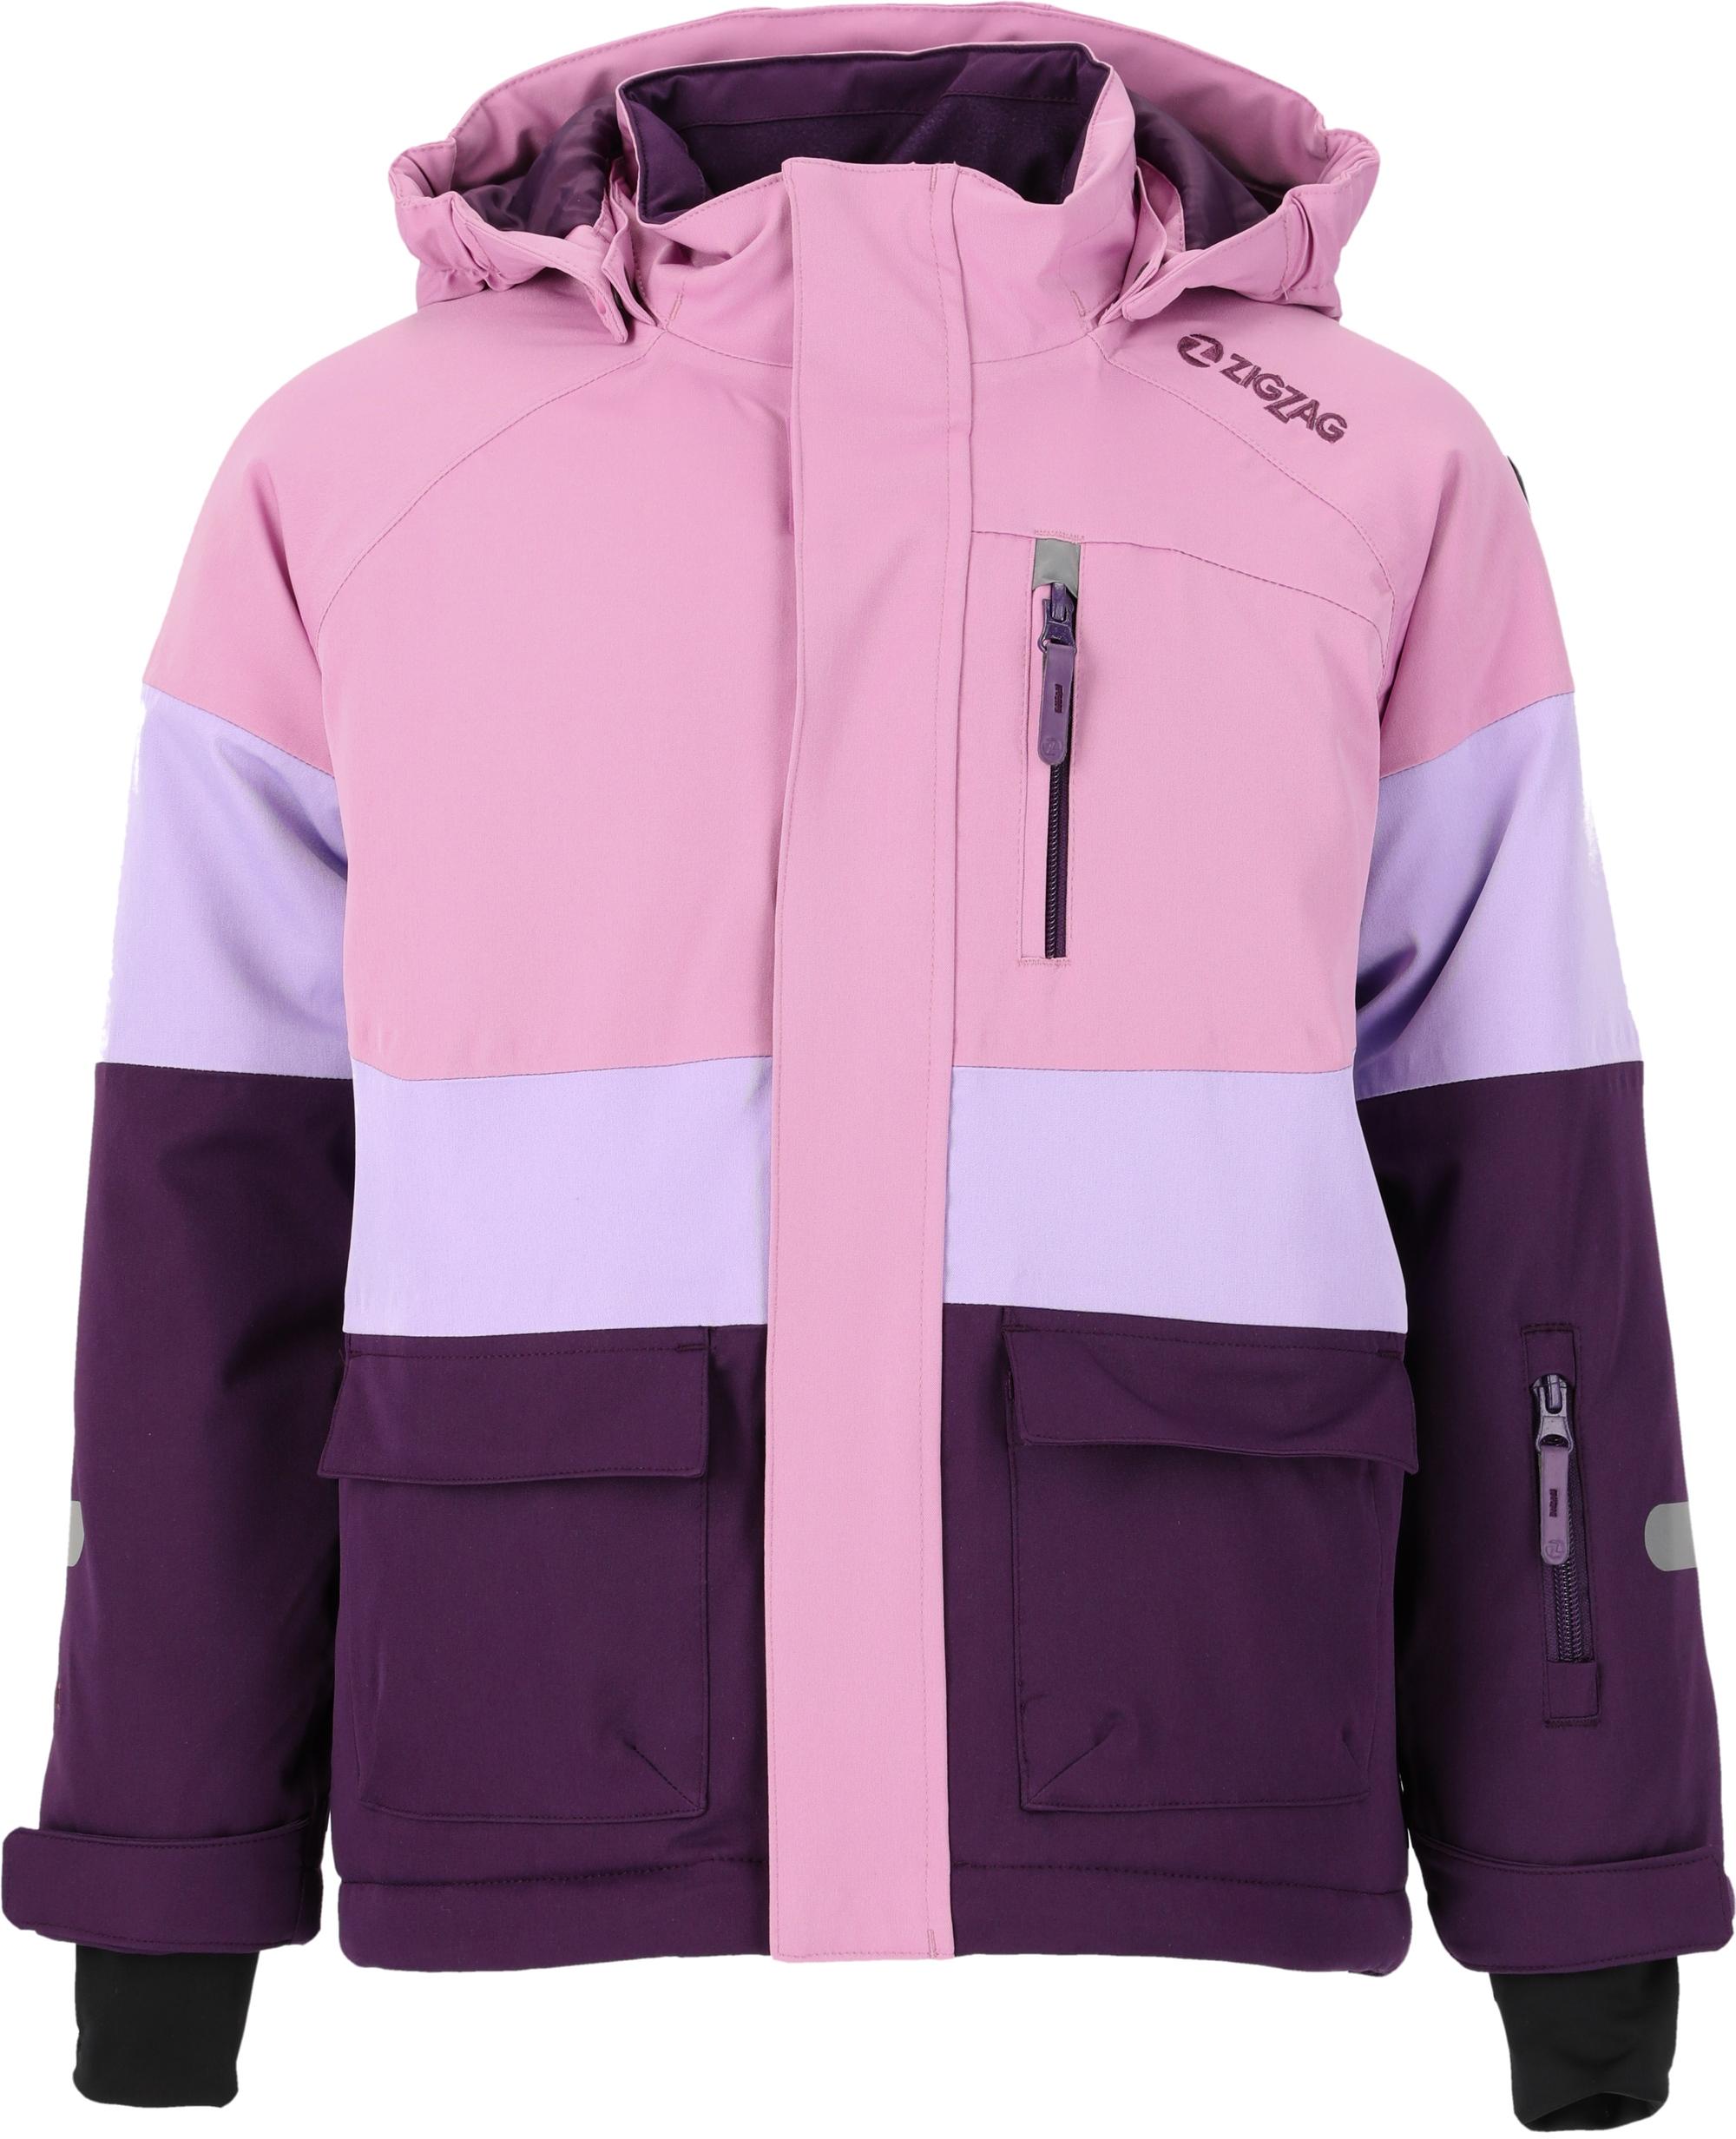 ZigZag Taylora Skijacke Purple kaufen SportScheck im Pennant Shop von Kinder Online 4149